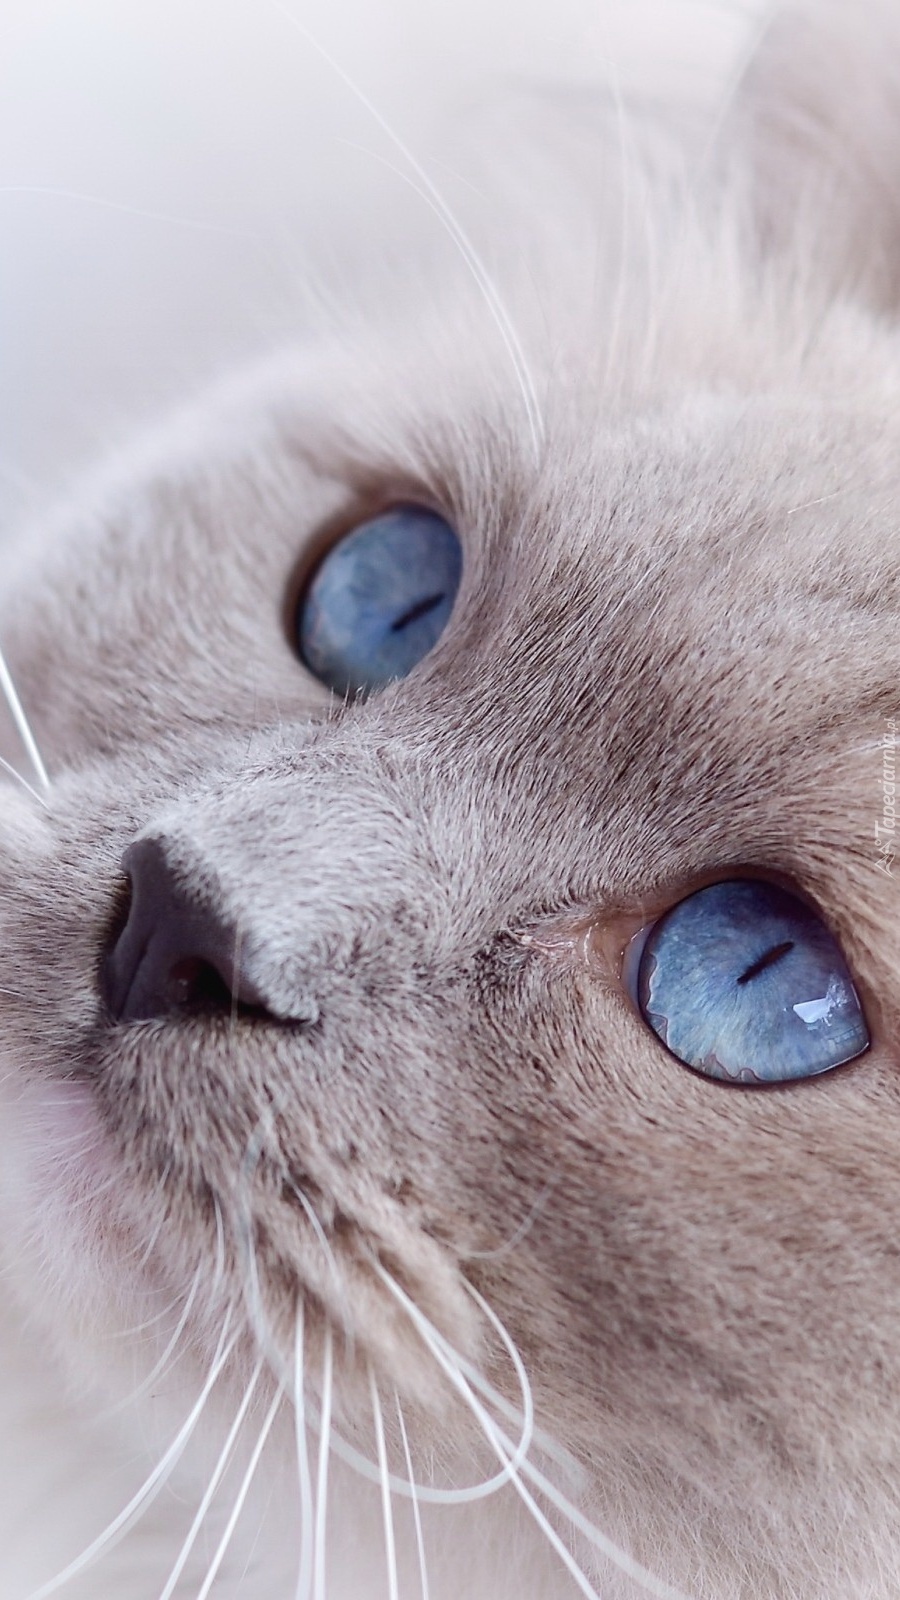 Oczy kota